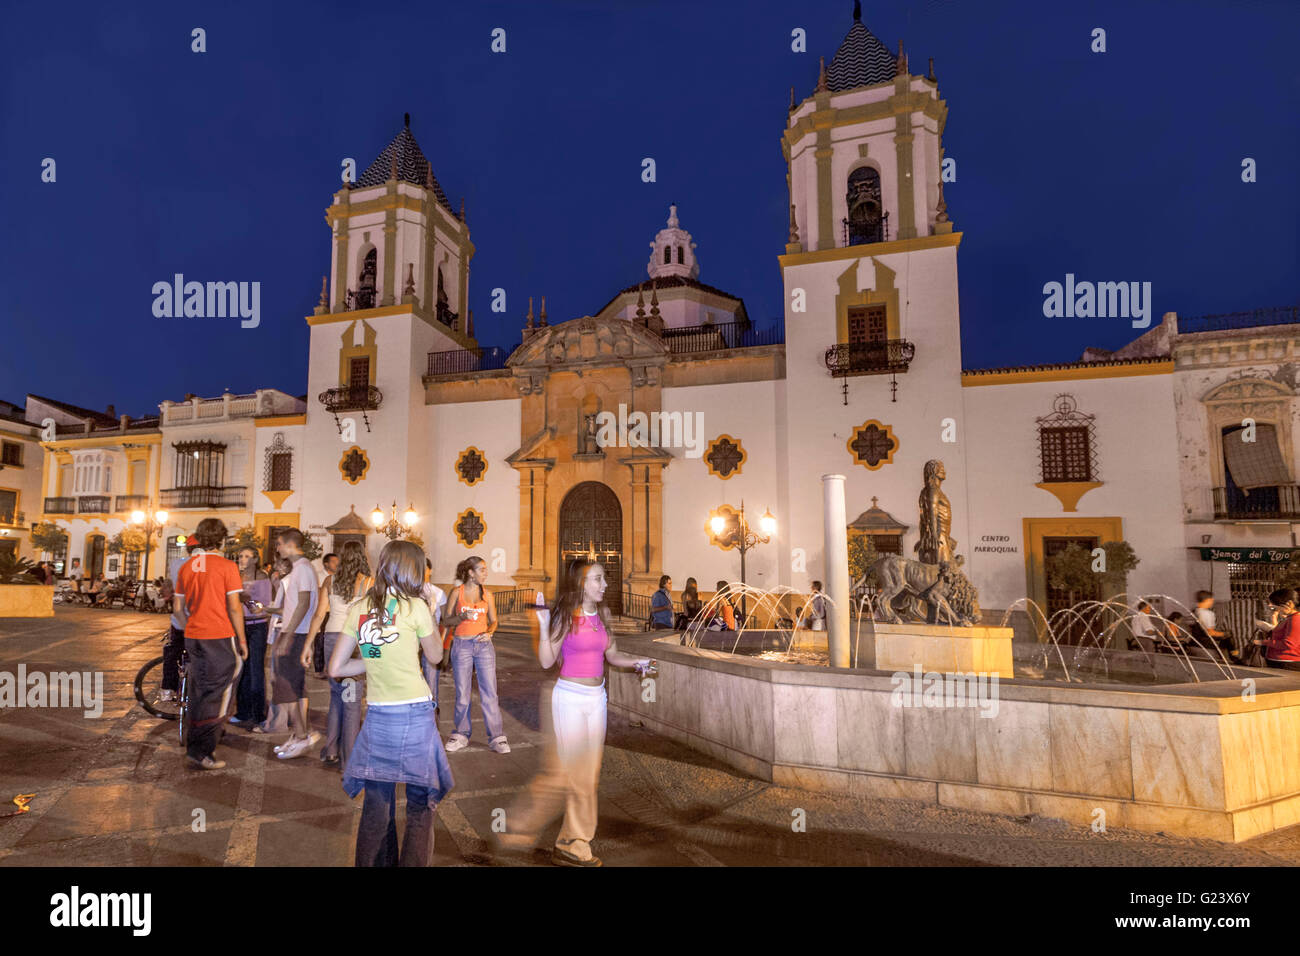 Plaza del Socorro at twilight, Ronda, Andalusia, Spain Stock Photo